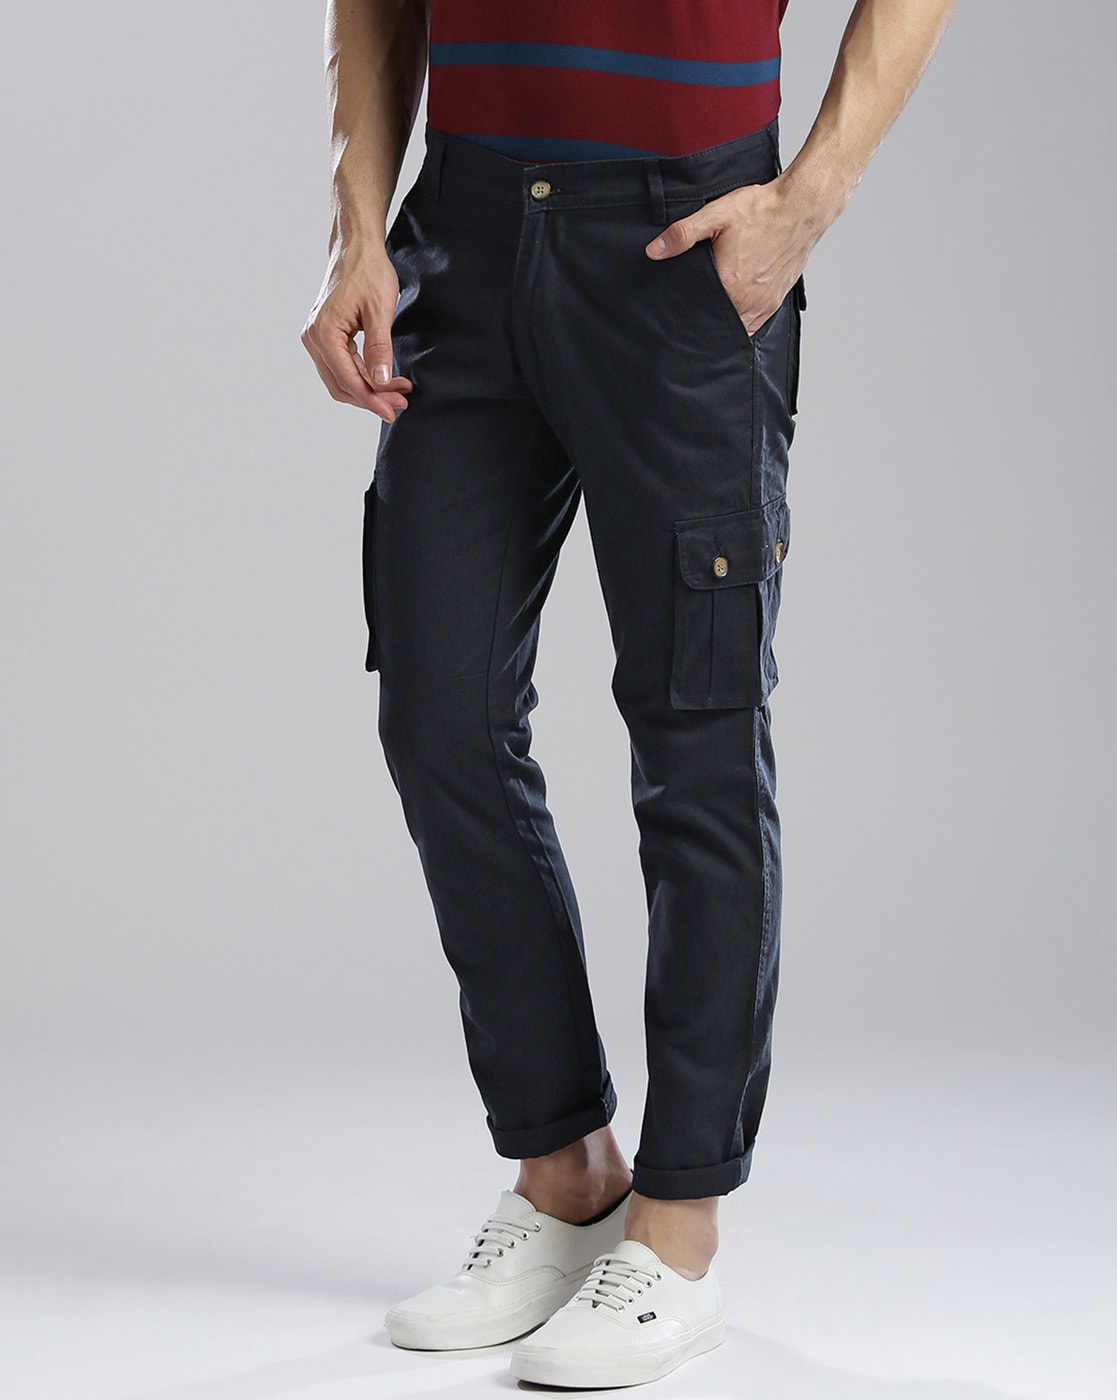 Buy Hubberholme Men's Casual Cargo Trousers (Khaki, 36) Men's Casual Cargo  Trousers (Light Blue, 36) Combo at Amazon.in